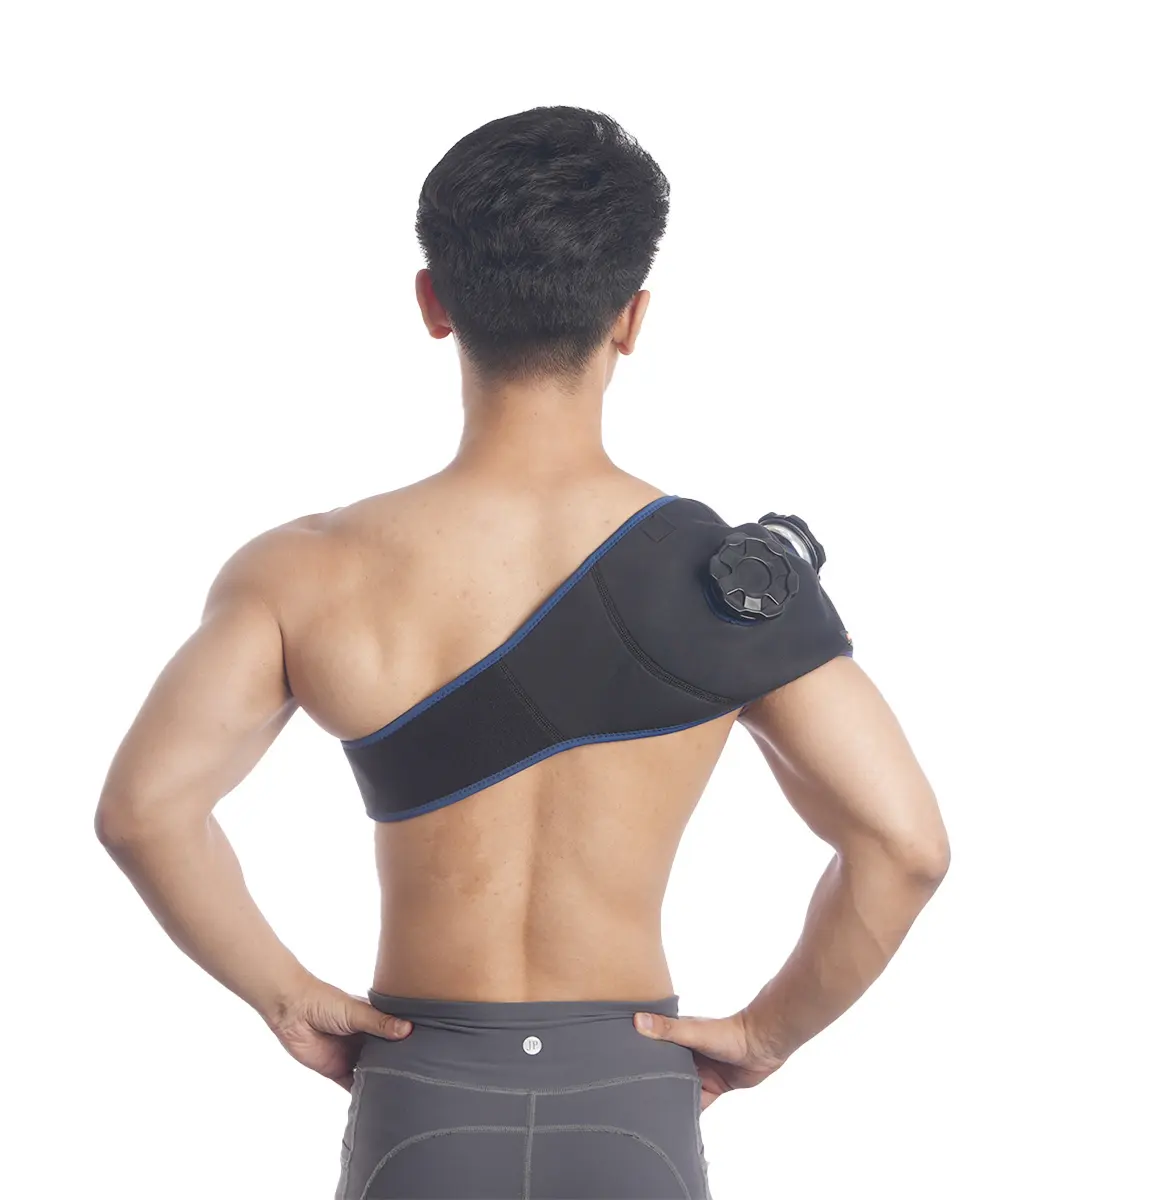 Tracolla sportiva a spalla singola regolabile a pressione supporto per la spalla da esterno fitness basket badminton